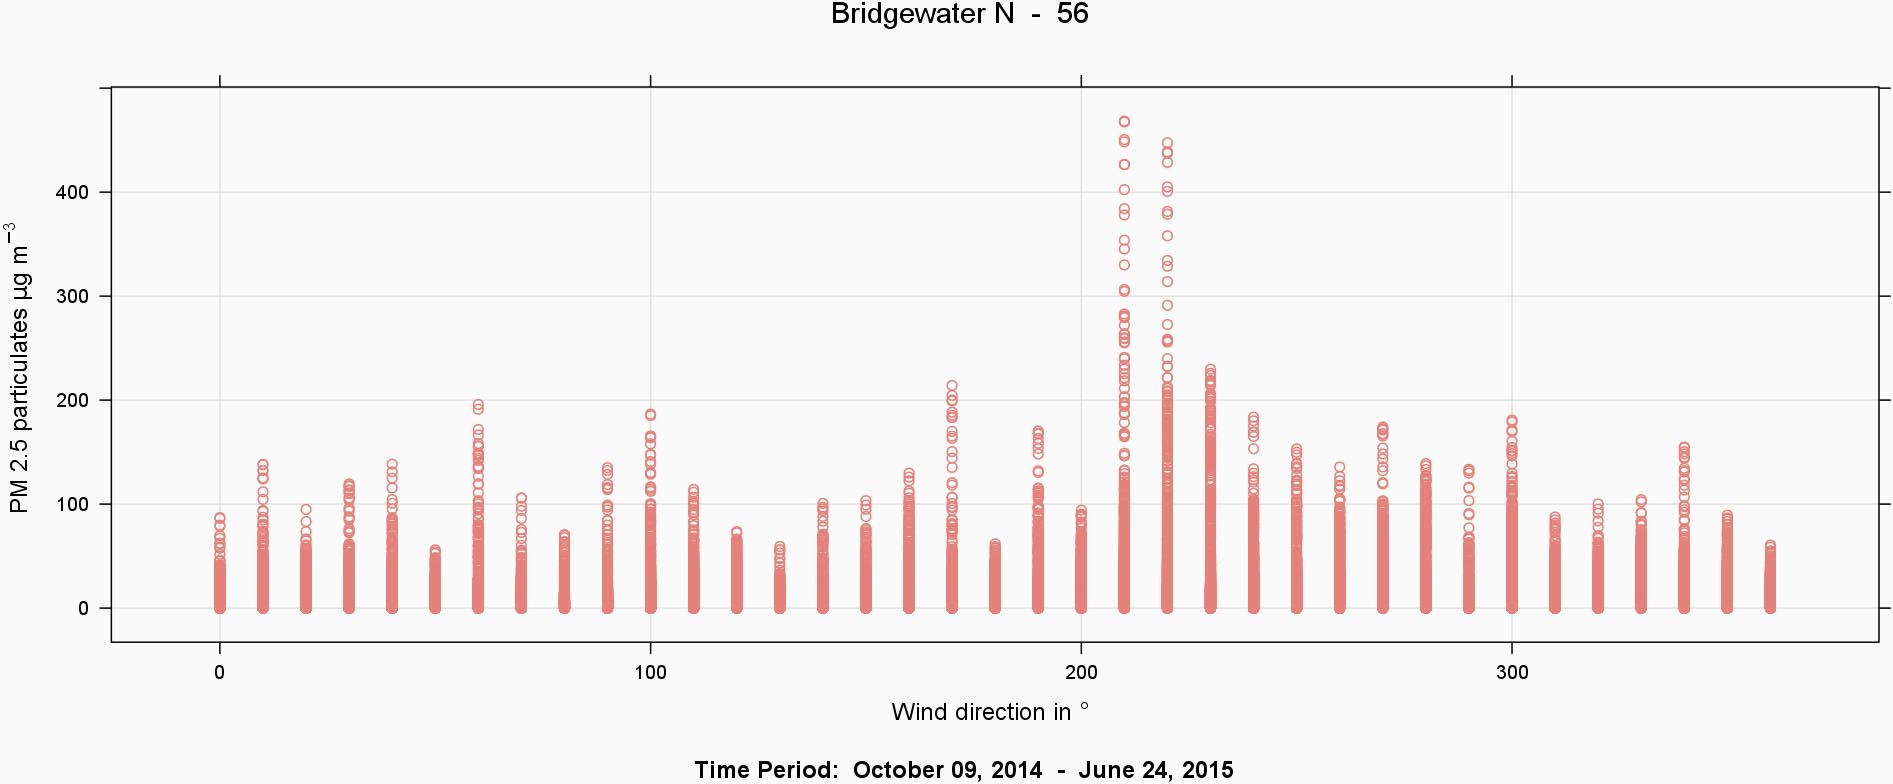 Fig5_BridgewaterN56_Winddir_Scatter-1